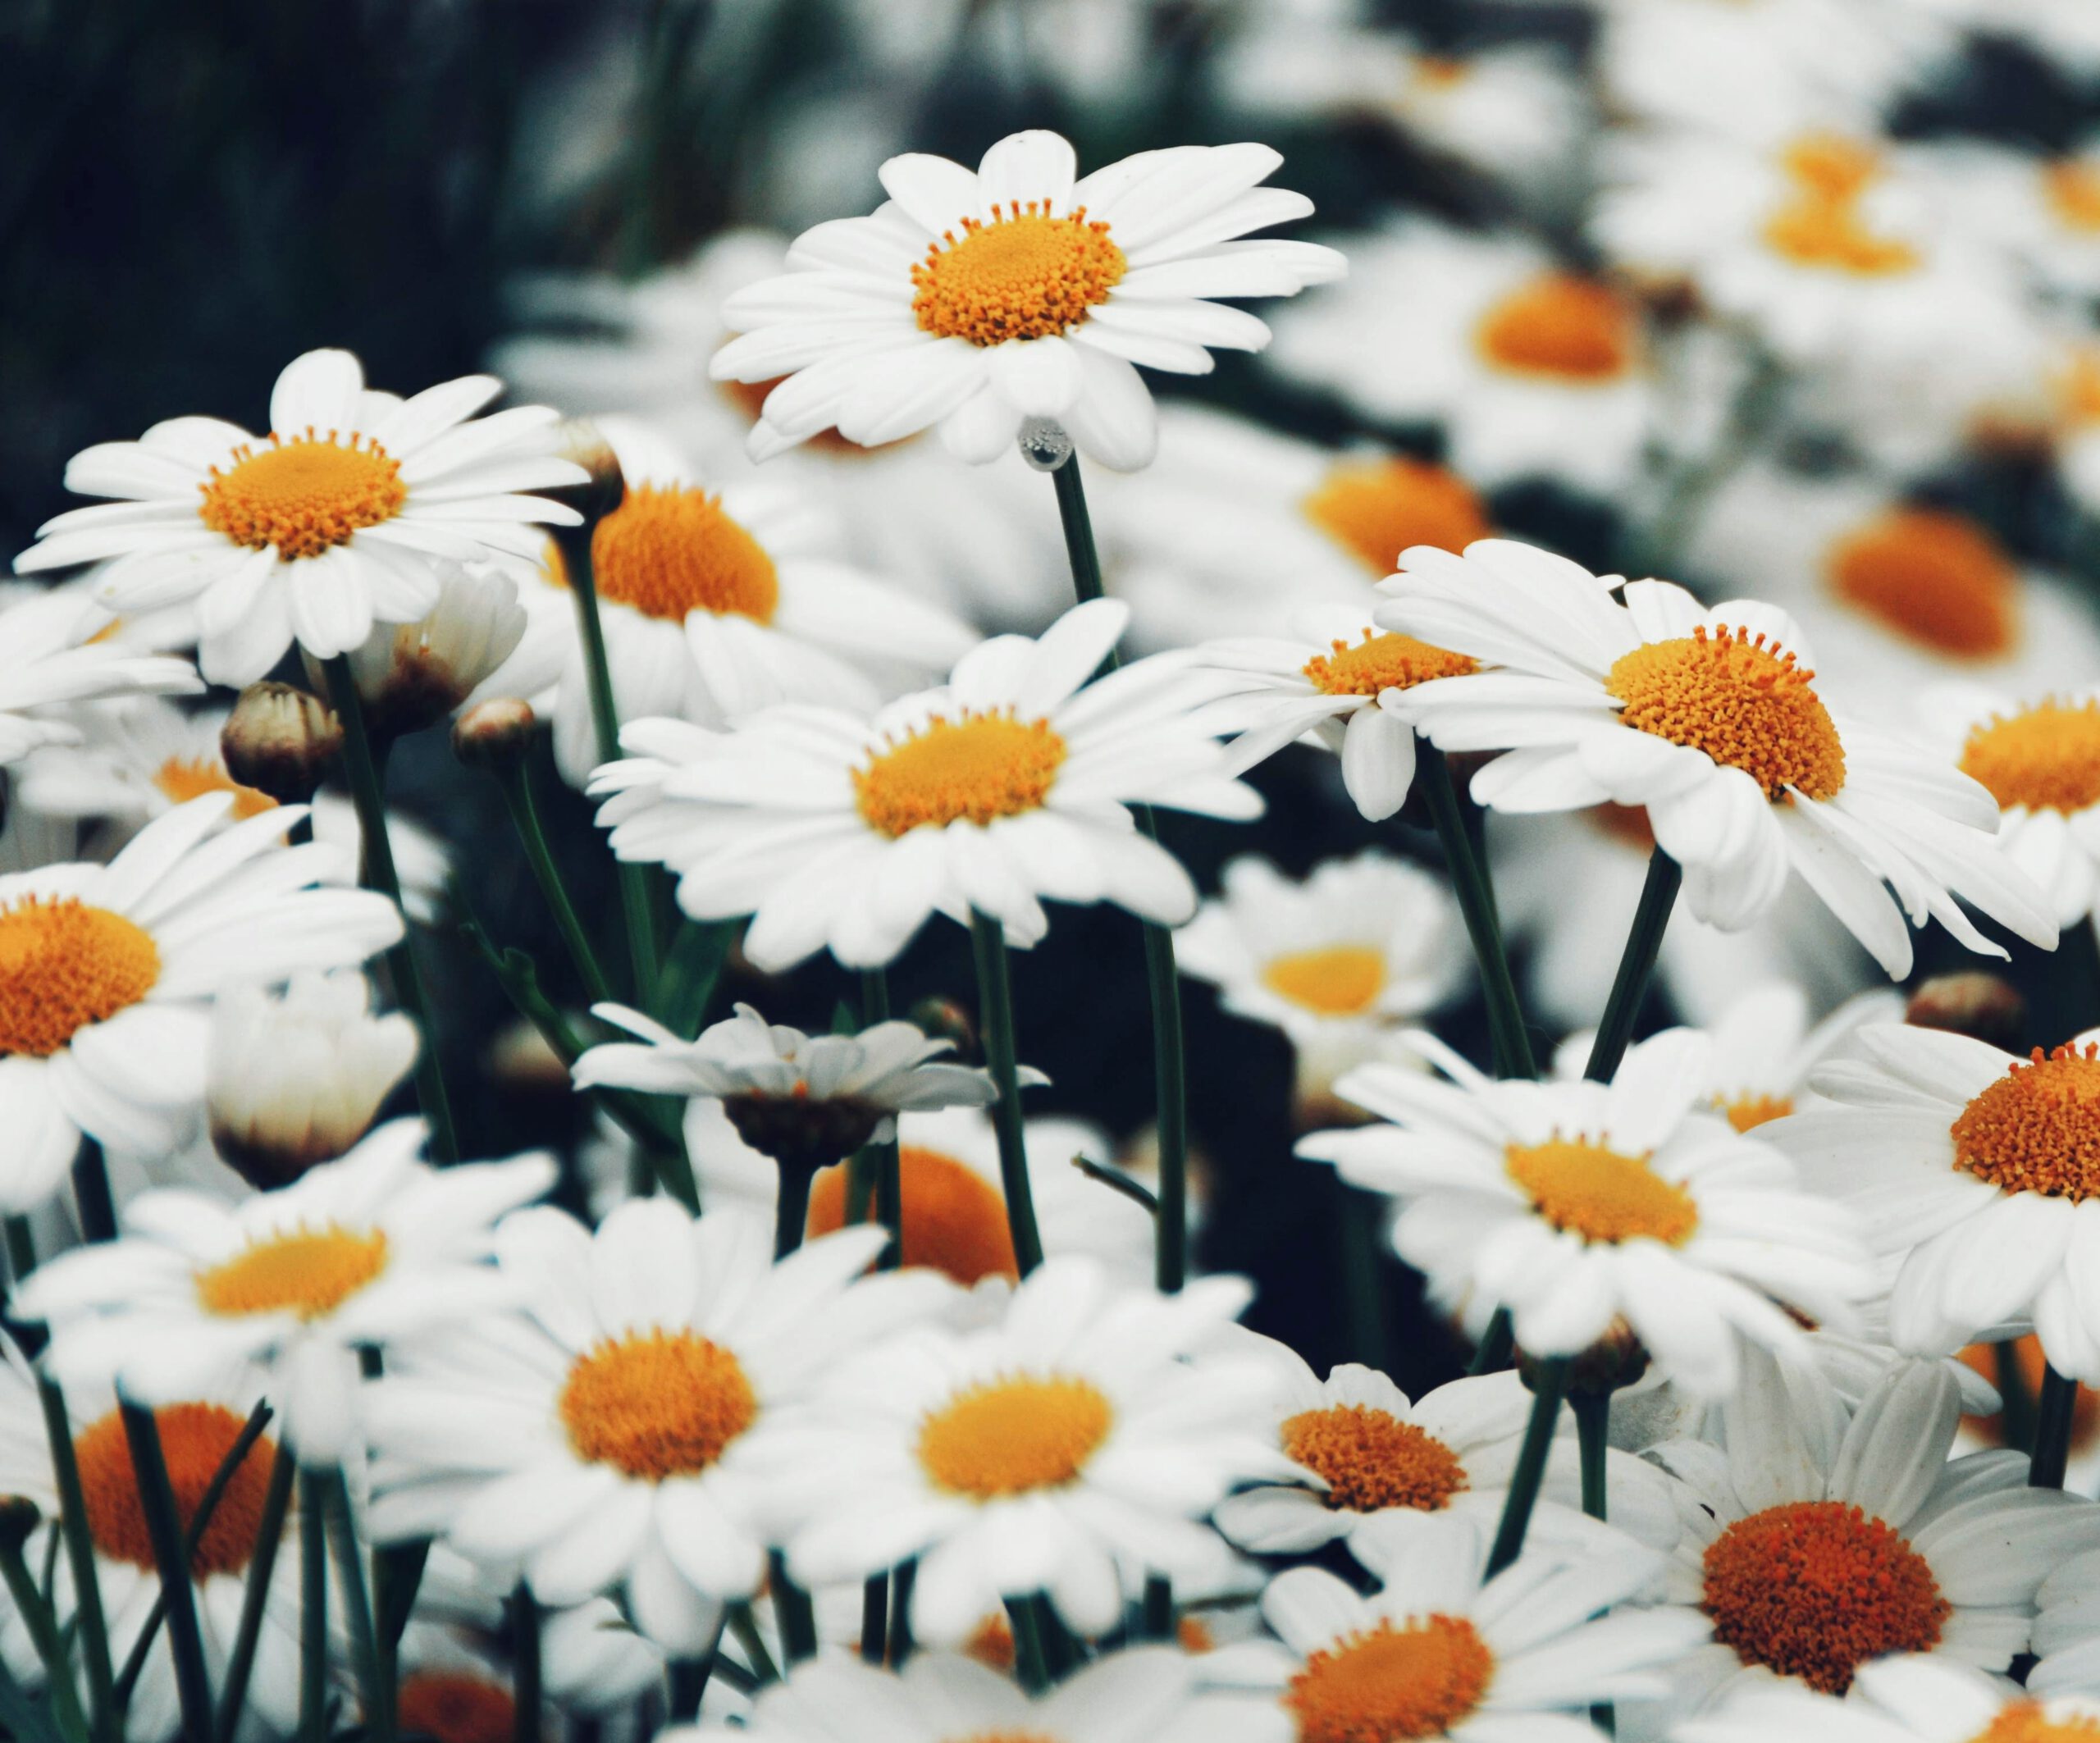 Ten ujmujący obrazek przedstawia rozległe pole z białymi stokrotkami, które tworzą piękne i delikatne kłęby na zielonej trawie. Ich niezwykła uroda i subtelność sprawiają, że są one popularnym motywem w kwiatach ciętych oraz w ogrodnictwie ozdobnym.